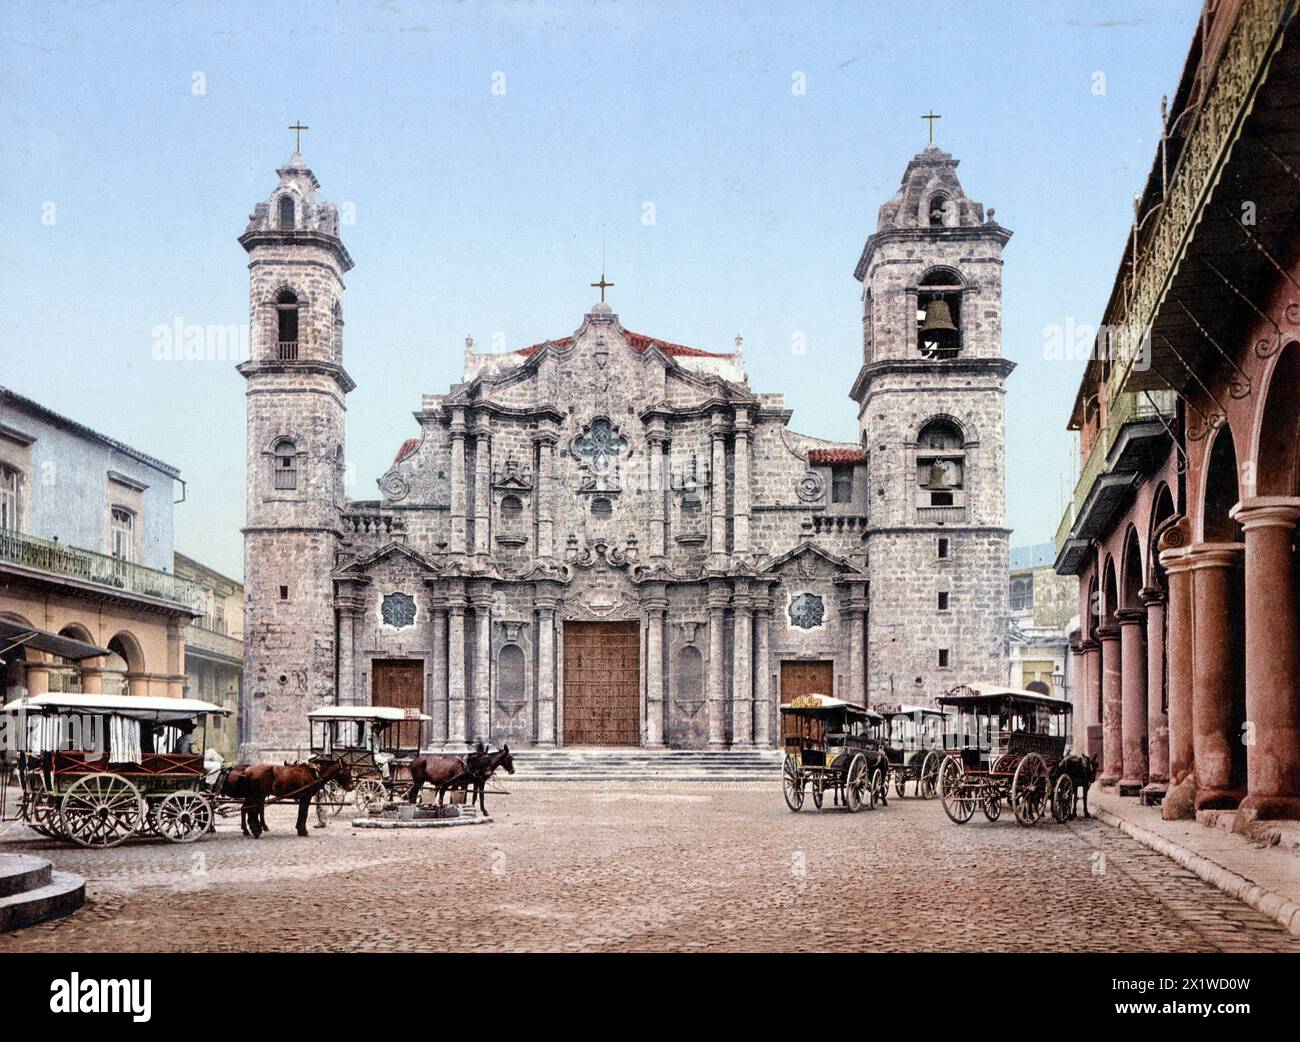 Kathedrale San Cristobal, Catedral de San Cristobalm ist eine Römisch-katholische Domkirche in Havanna, Kuba, um 1890, Historisch, digital restauriert Banque D'Images